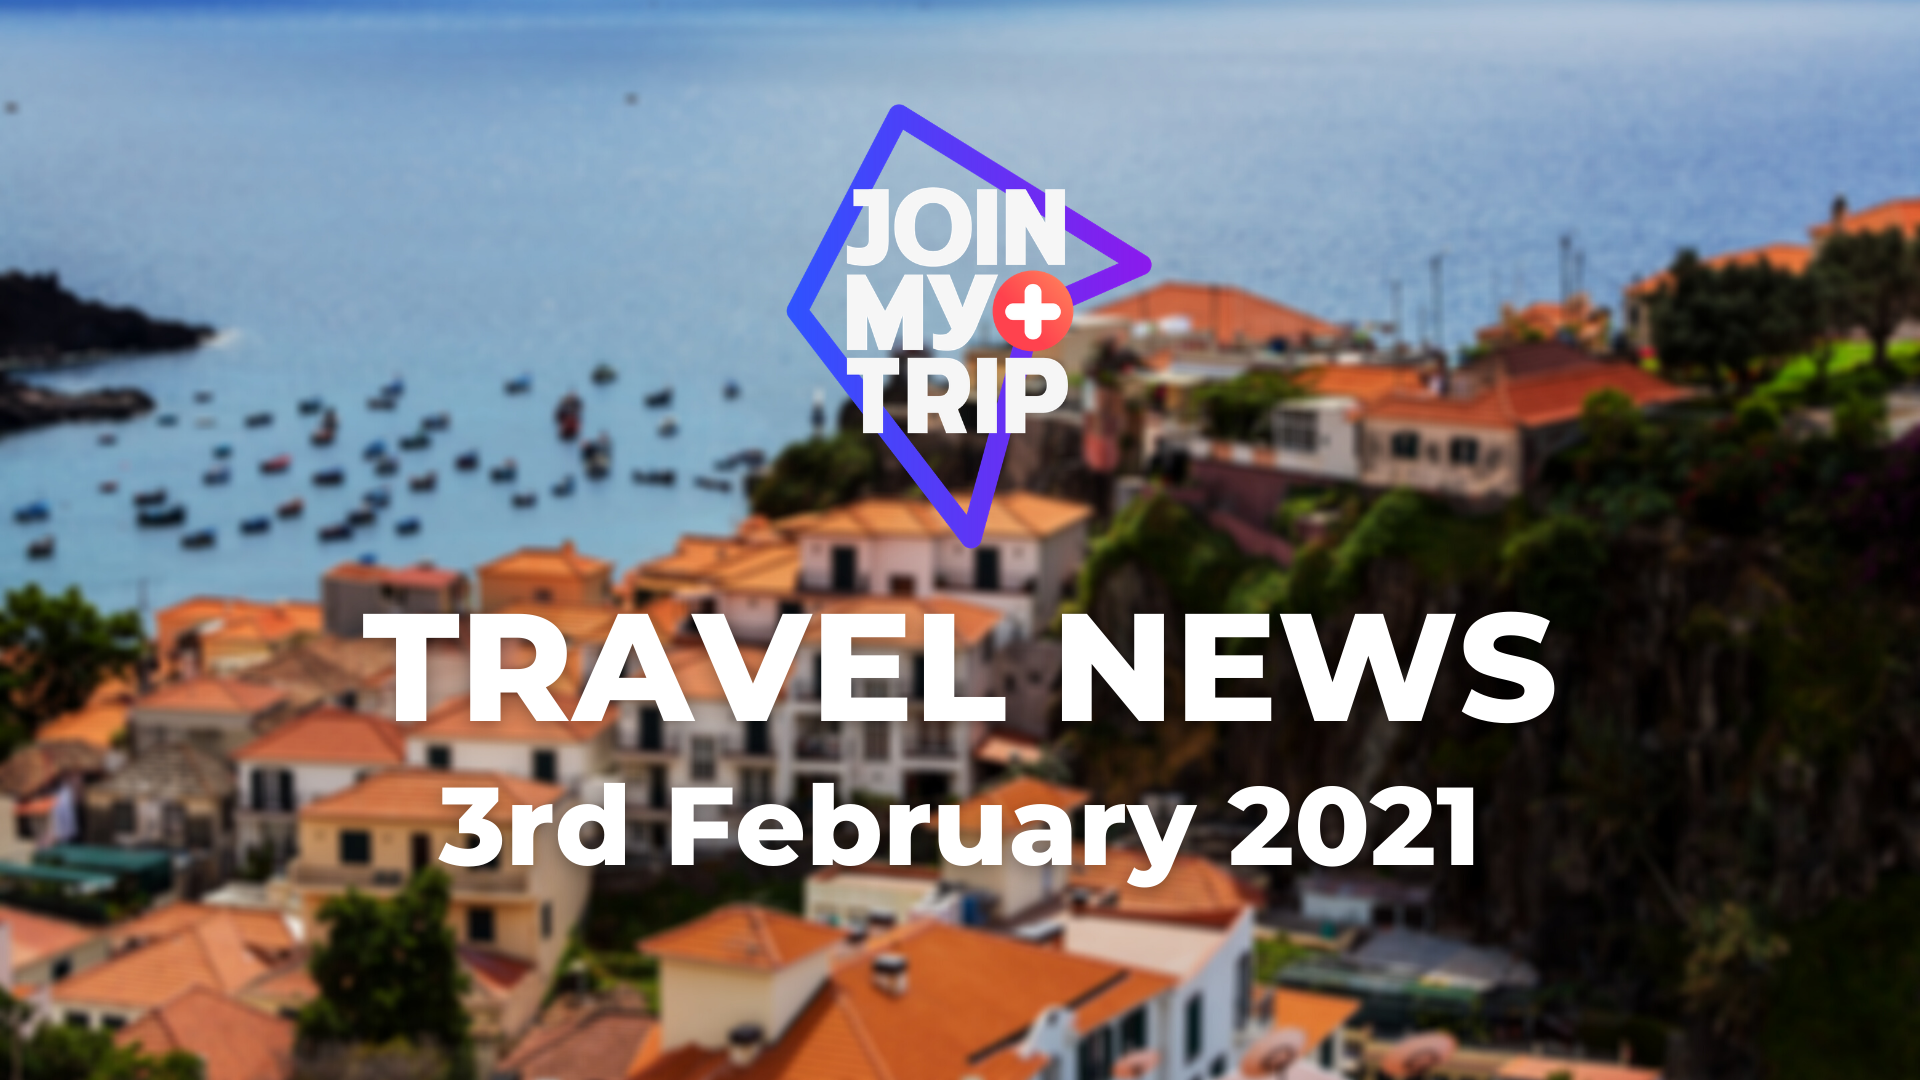 Madeira beliebtes Reiseziel für CoWorking | Reise News